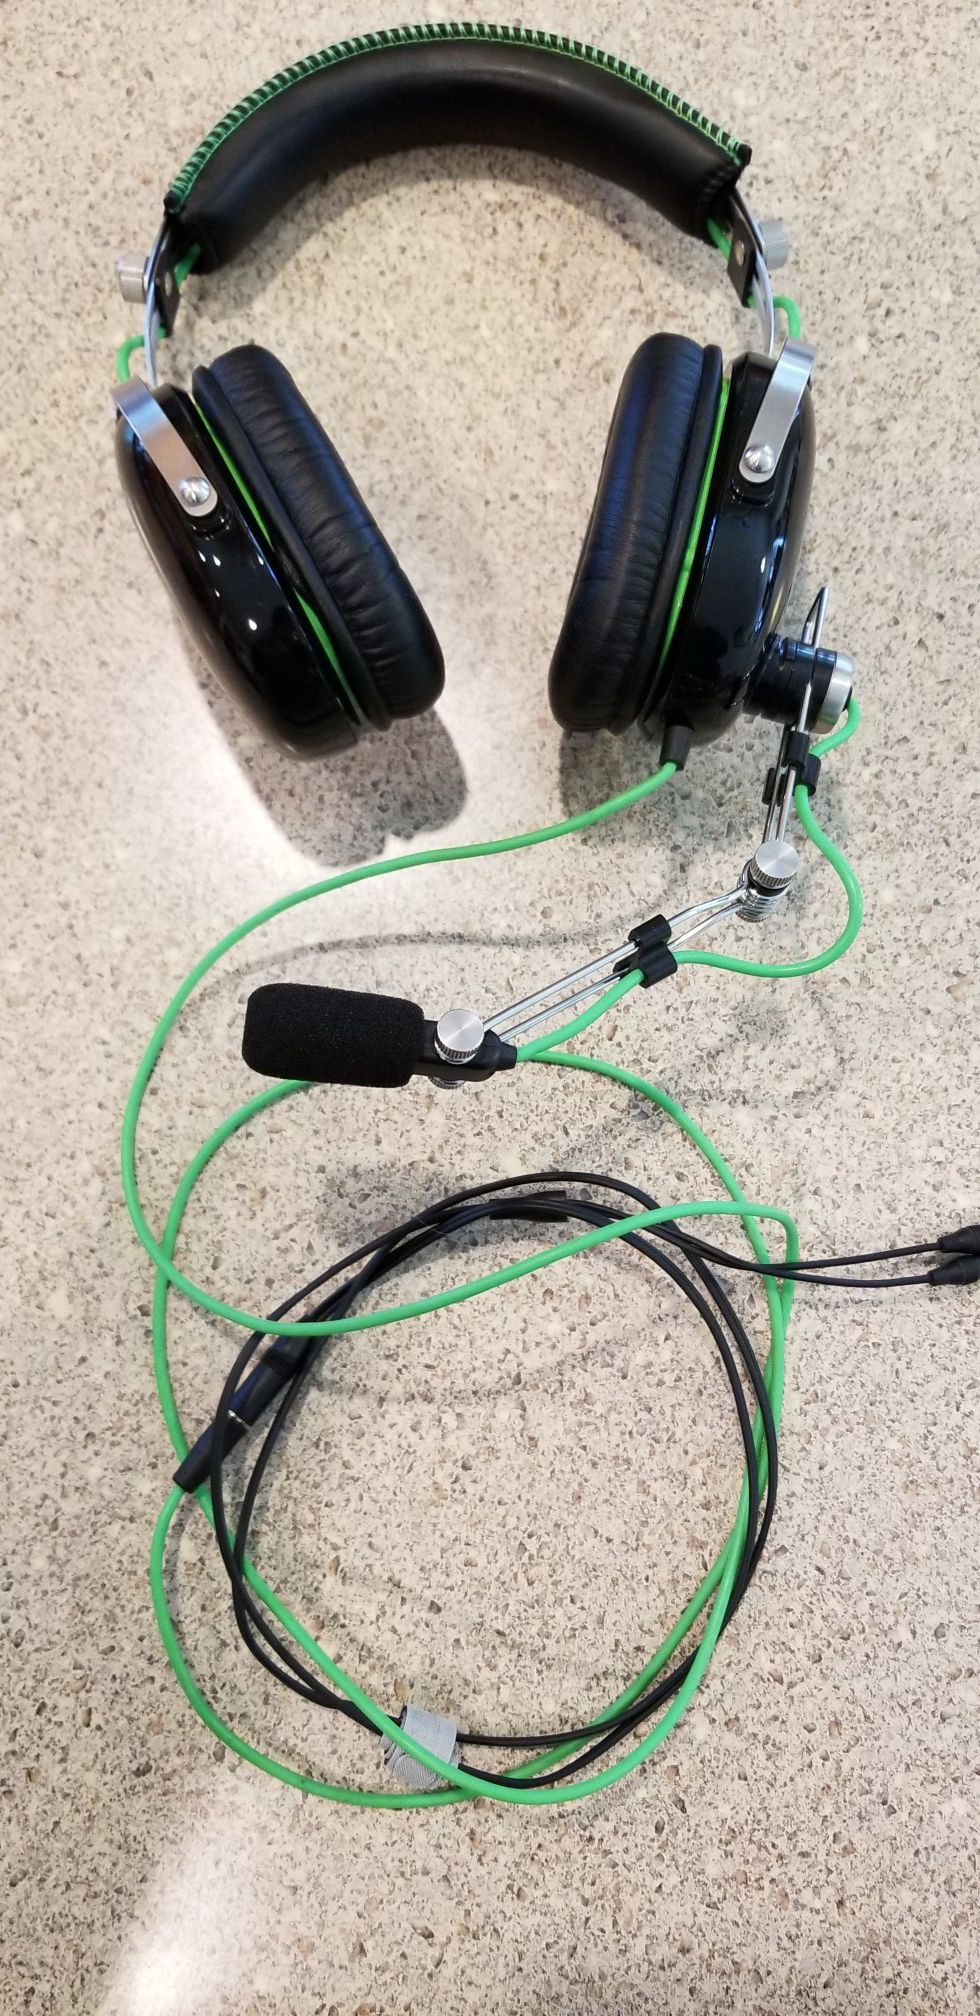 Razer PC gaming headphones w/ mic